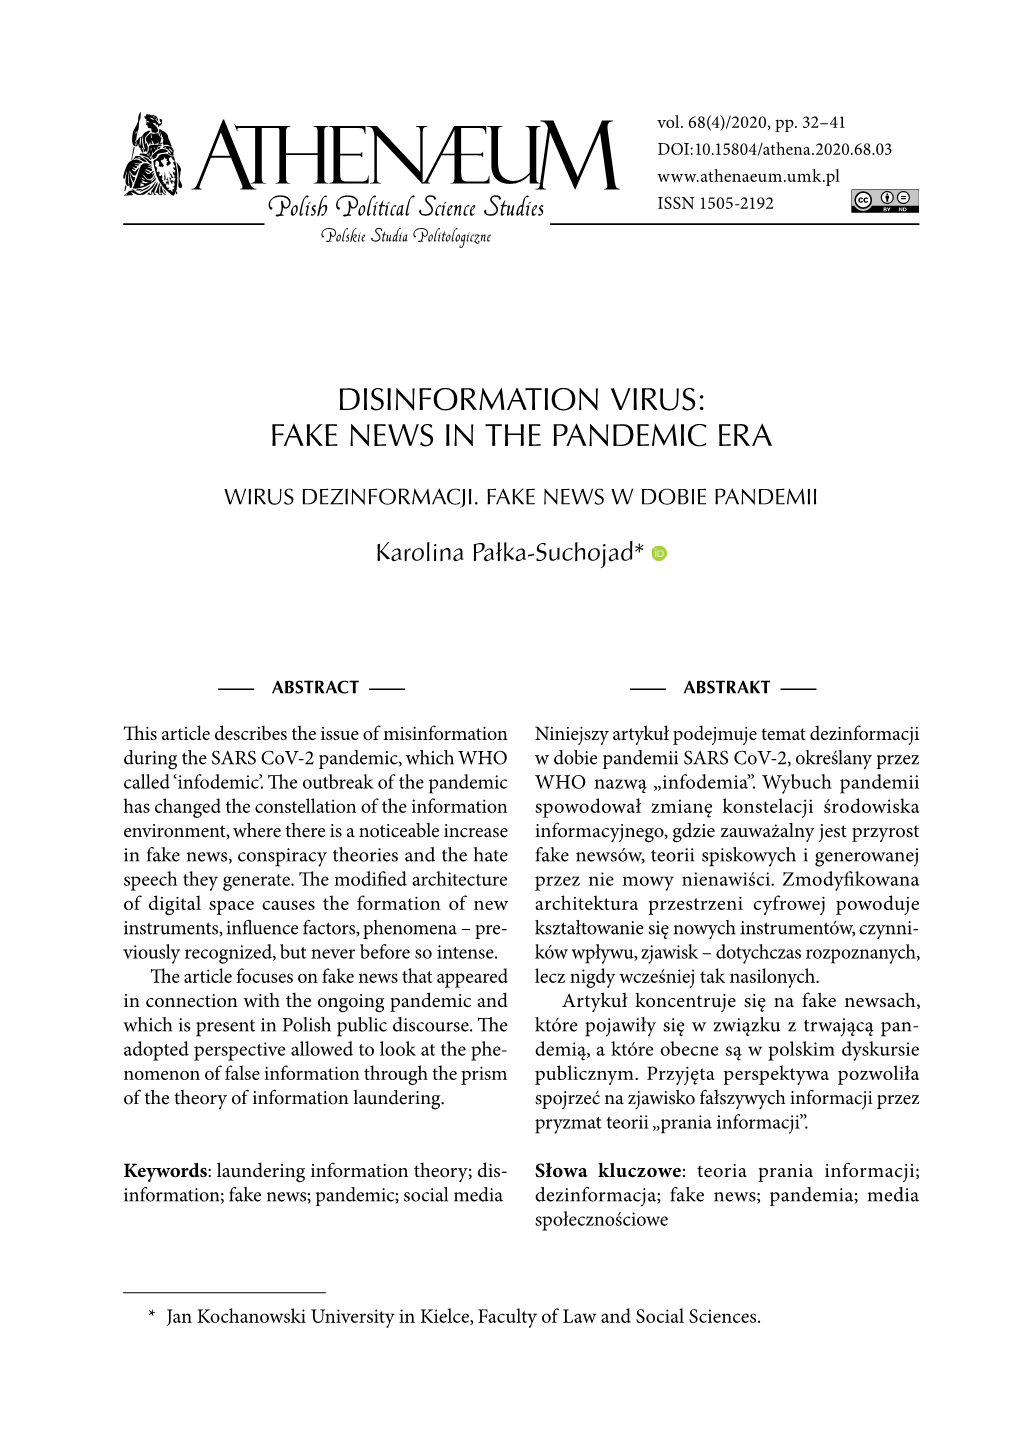 Disinformation Virus: Fake News in the Pandemic Era